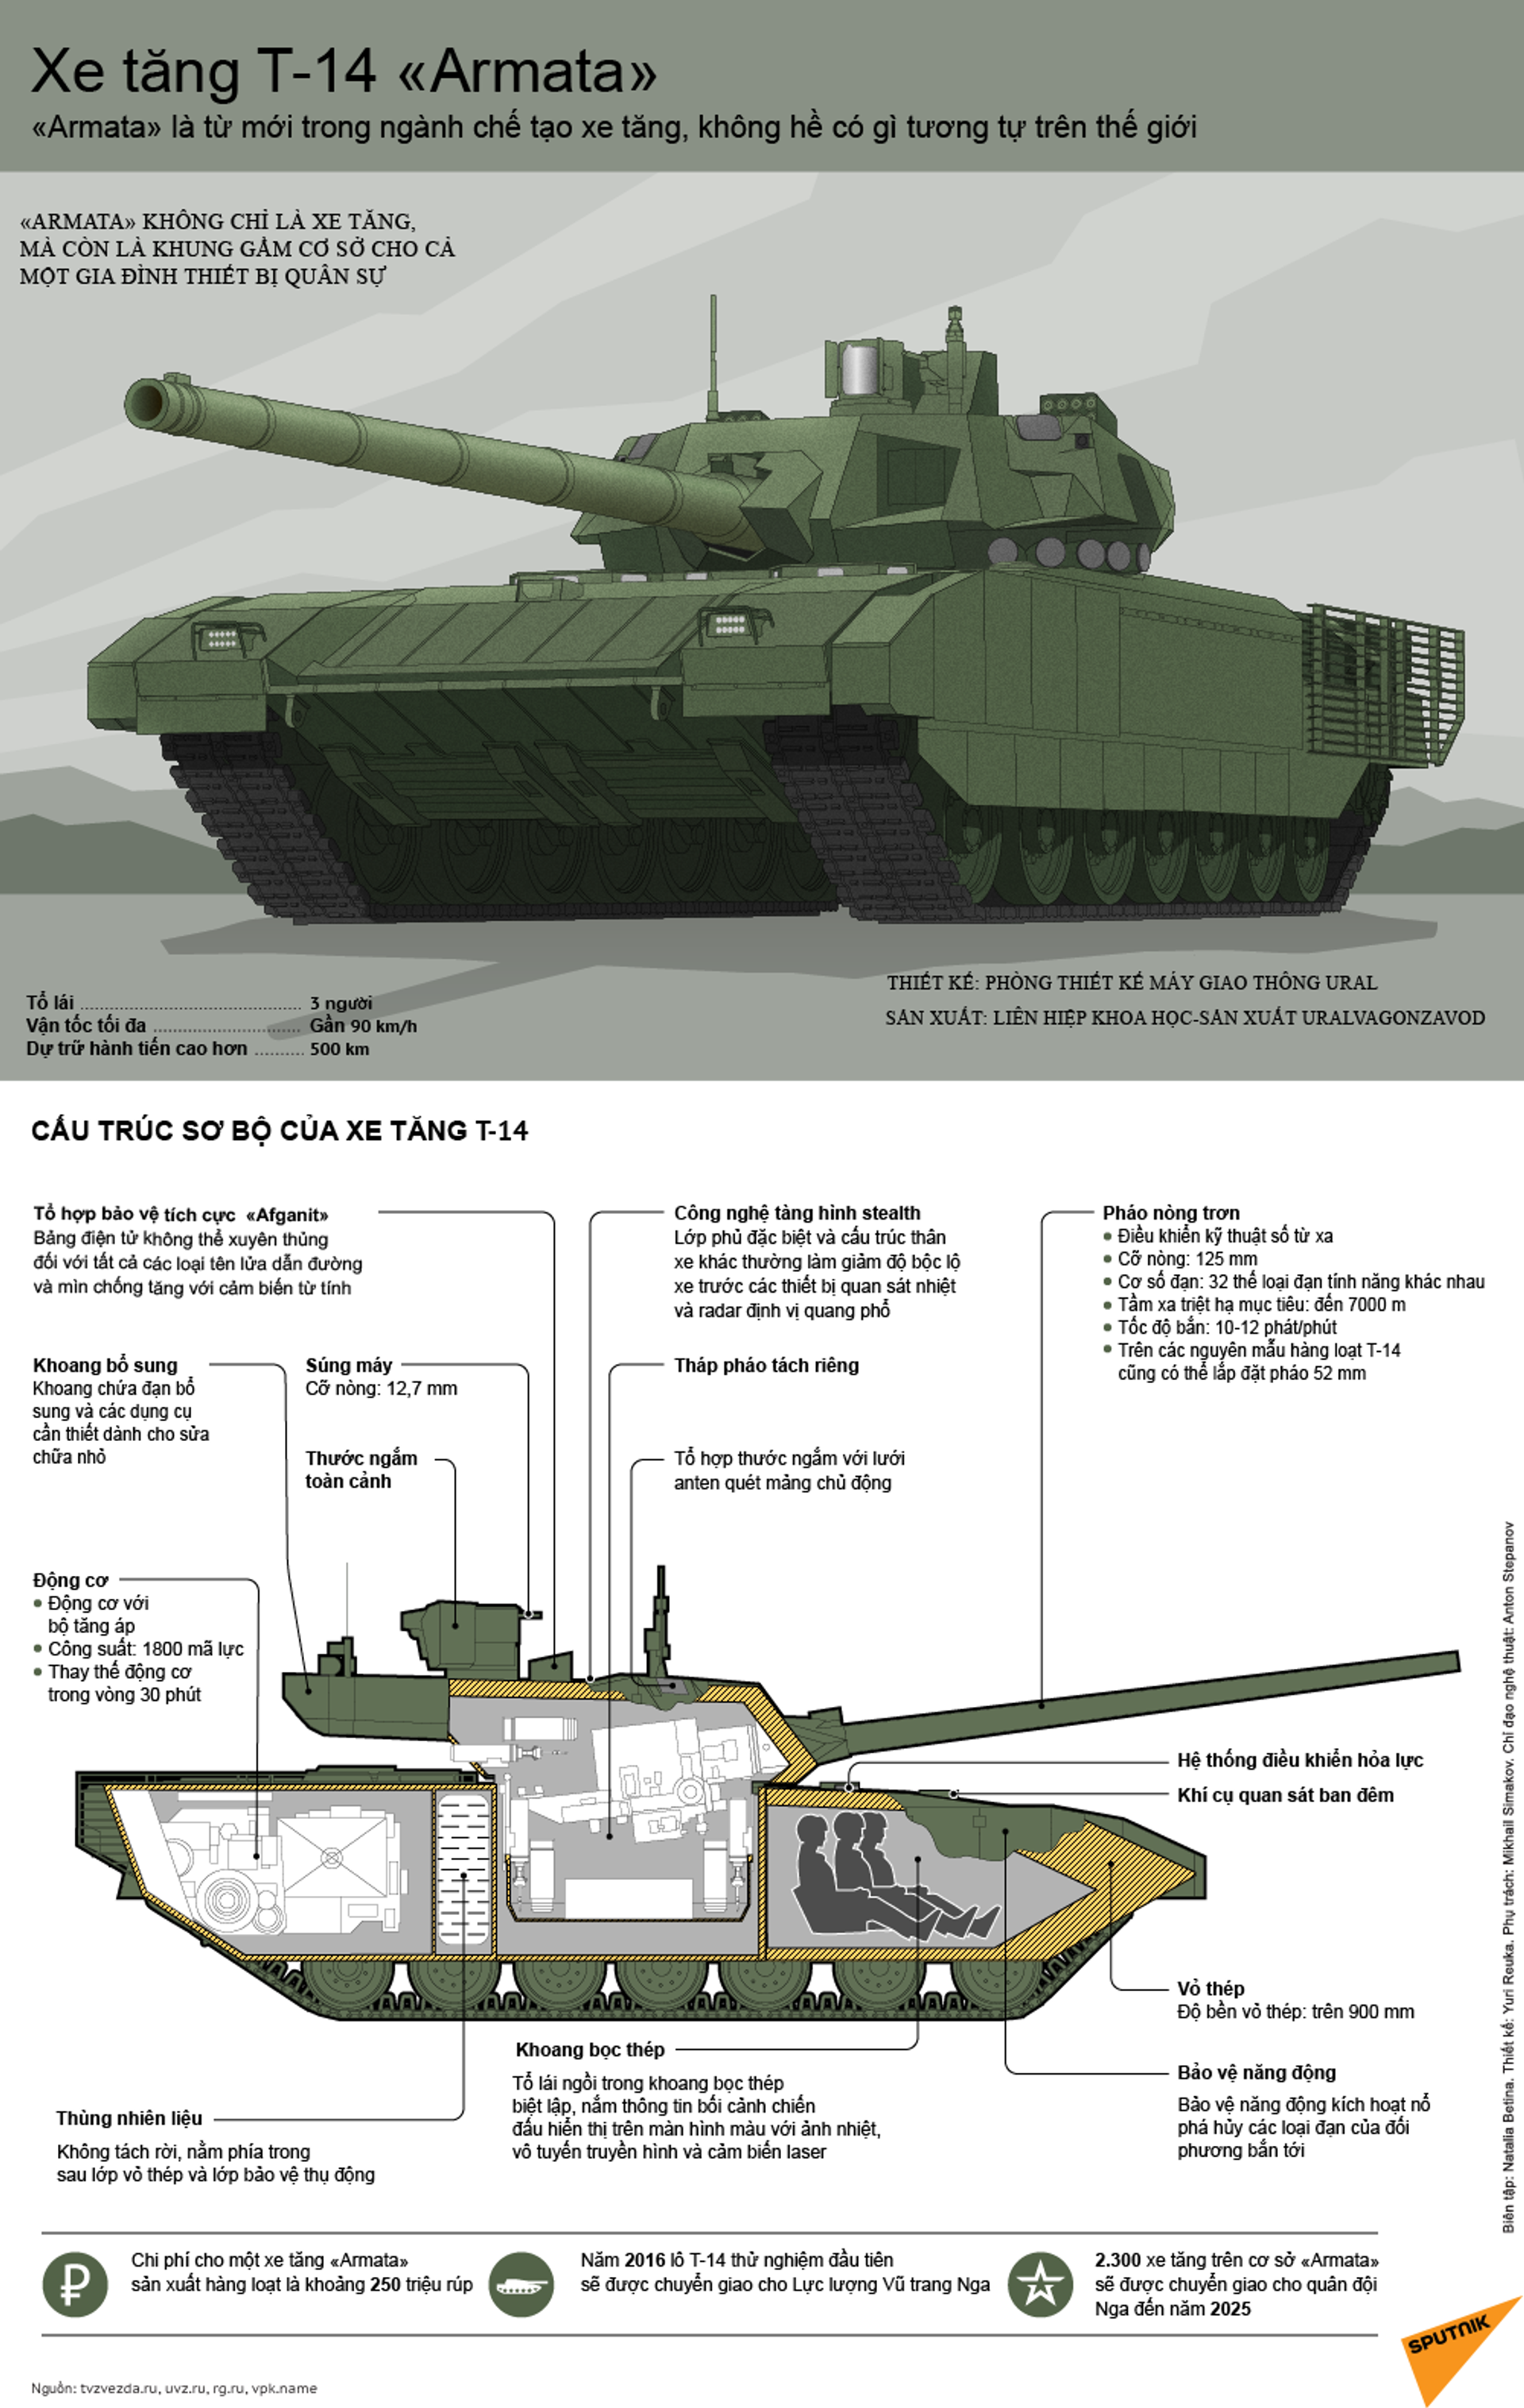 Mối đe dọa nghiêm trọng đối với NATO. Chuyên gia Mỹ so sánh xe tăng Armata và Abrams - Sputnik Việt Nam, 1920, 24.05.2021